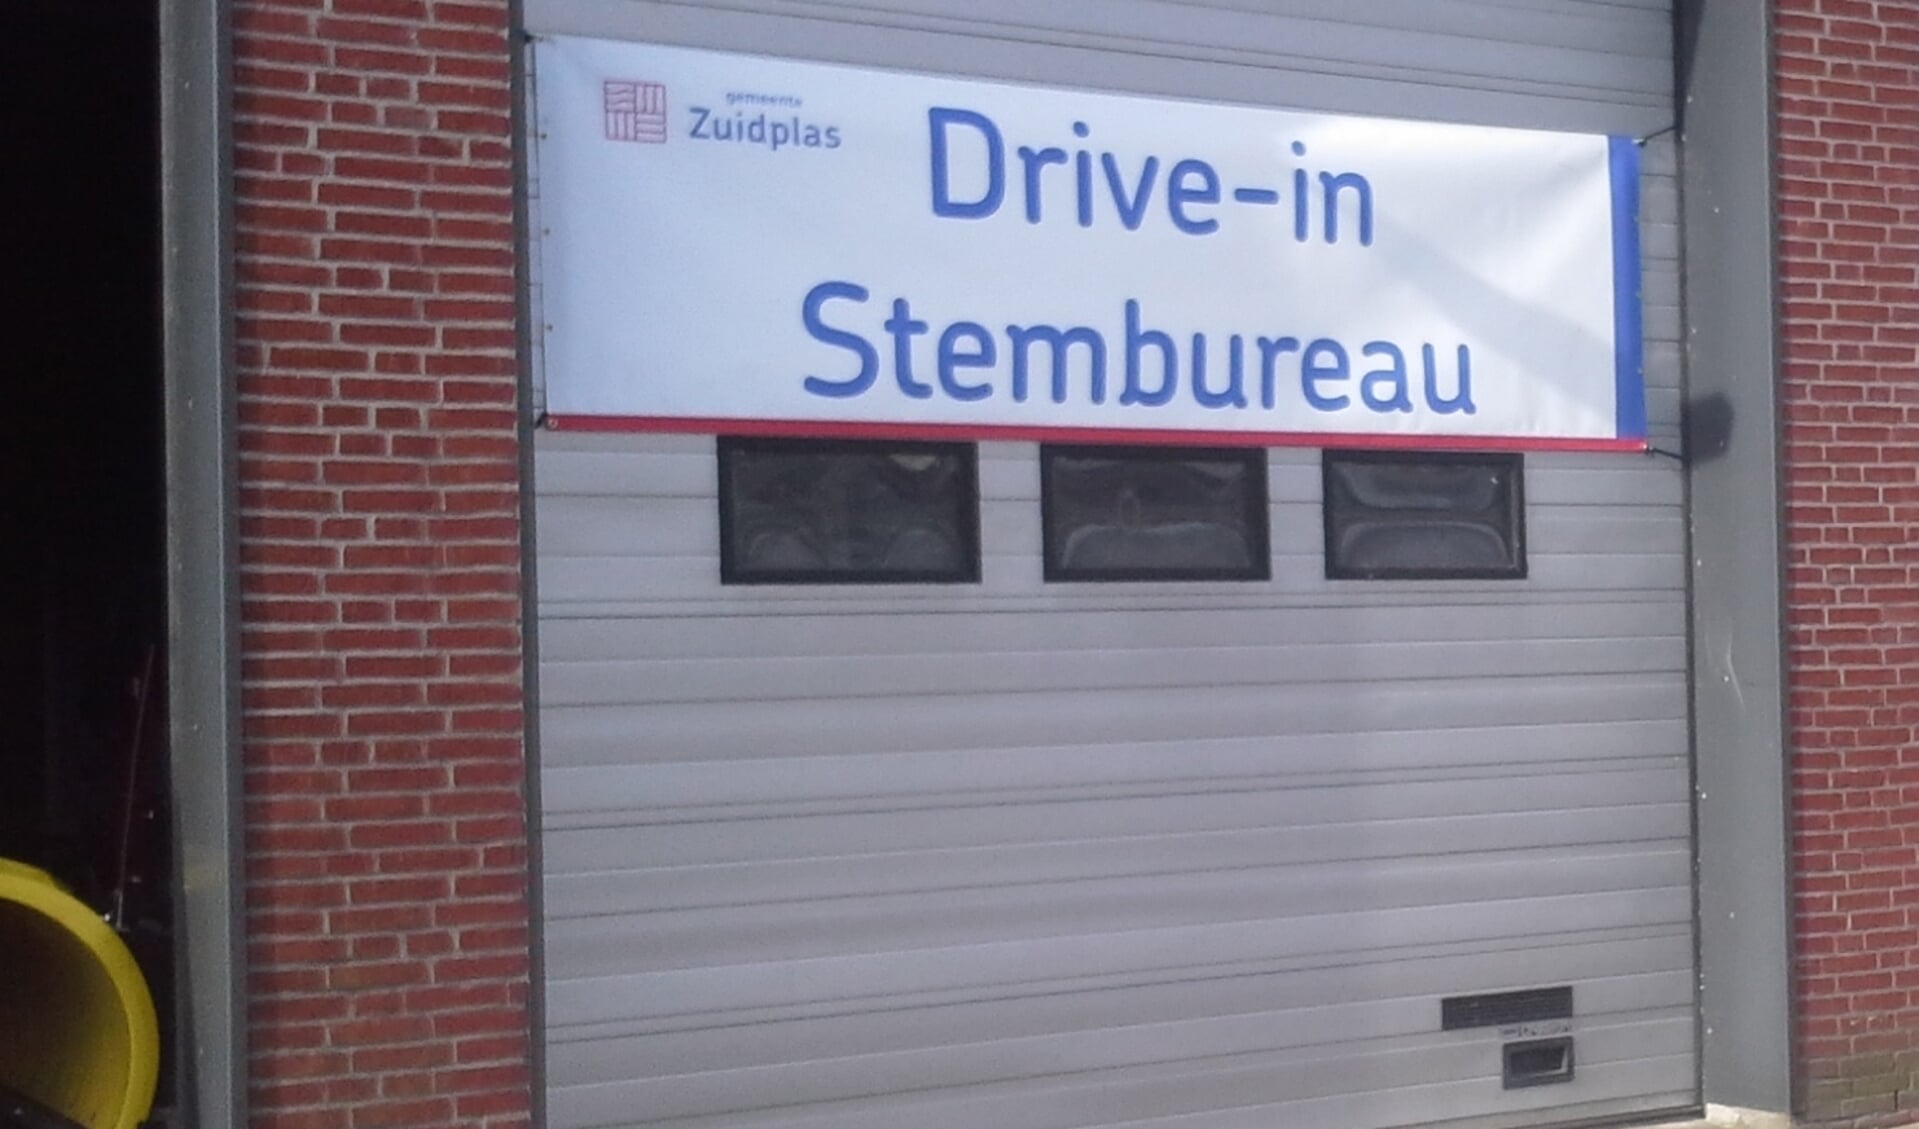 De gemeentewerf van Zevenhuizen doet ook regelmatig dienst als (drive-in) stembureau.